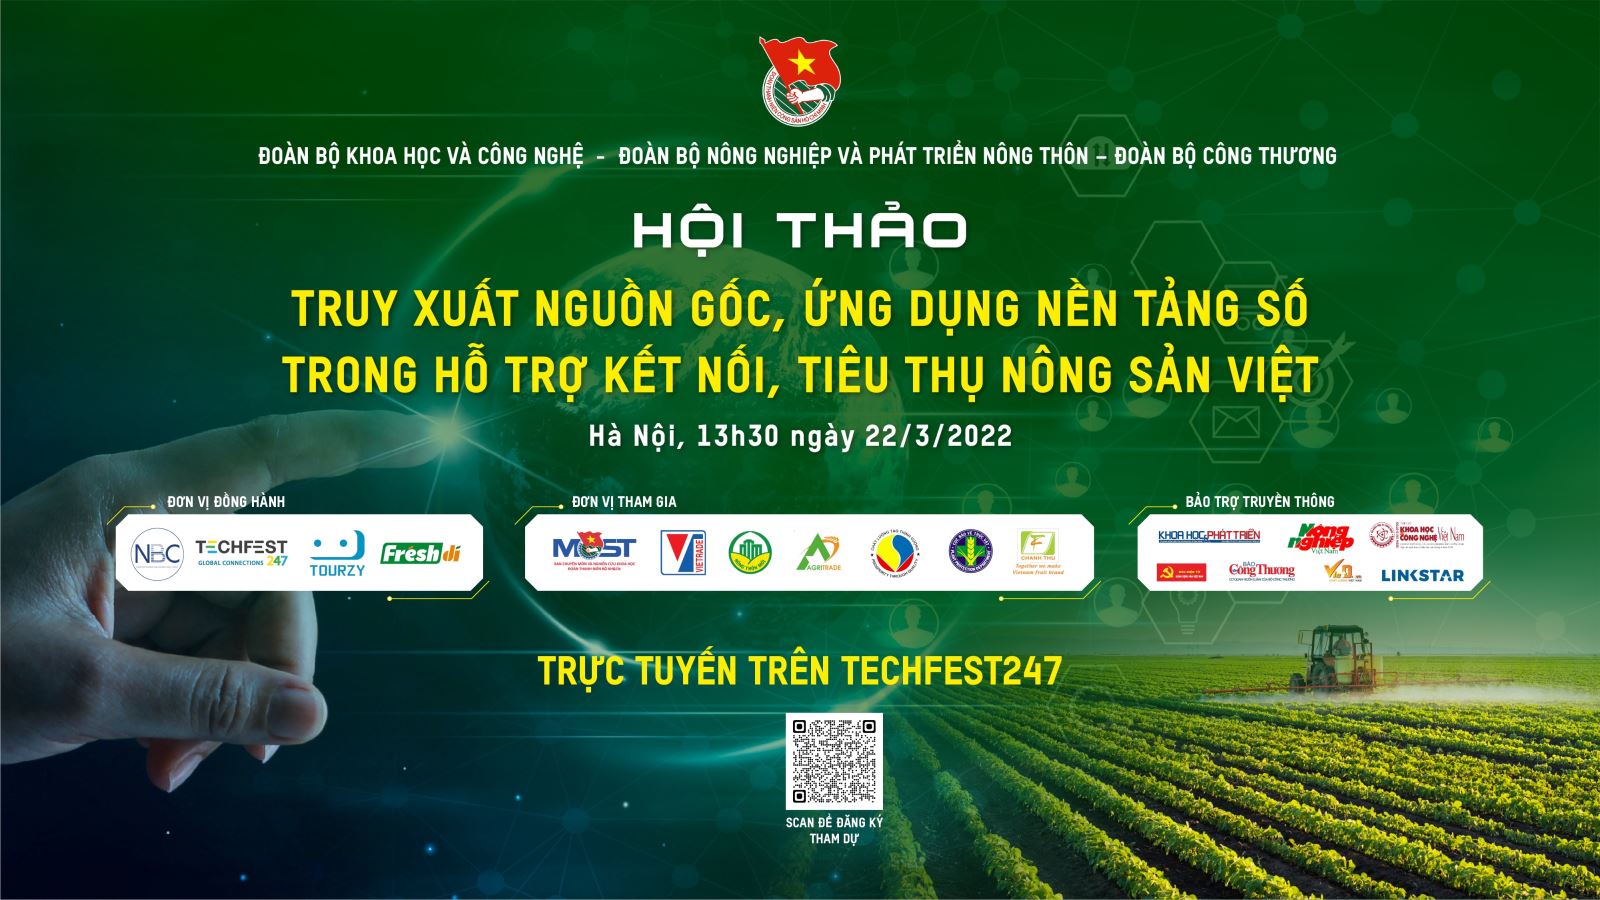 Hội thảo “Truy xuất nguồn gốc, ứng dụng nền tảng số trong hỗ trợ kết nối, tiêu thụ nông sản Việt”.